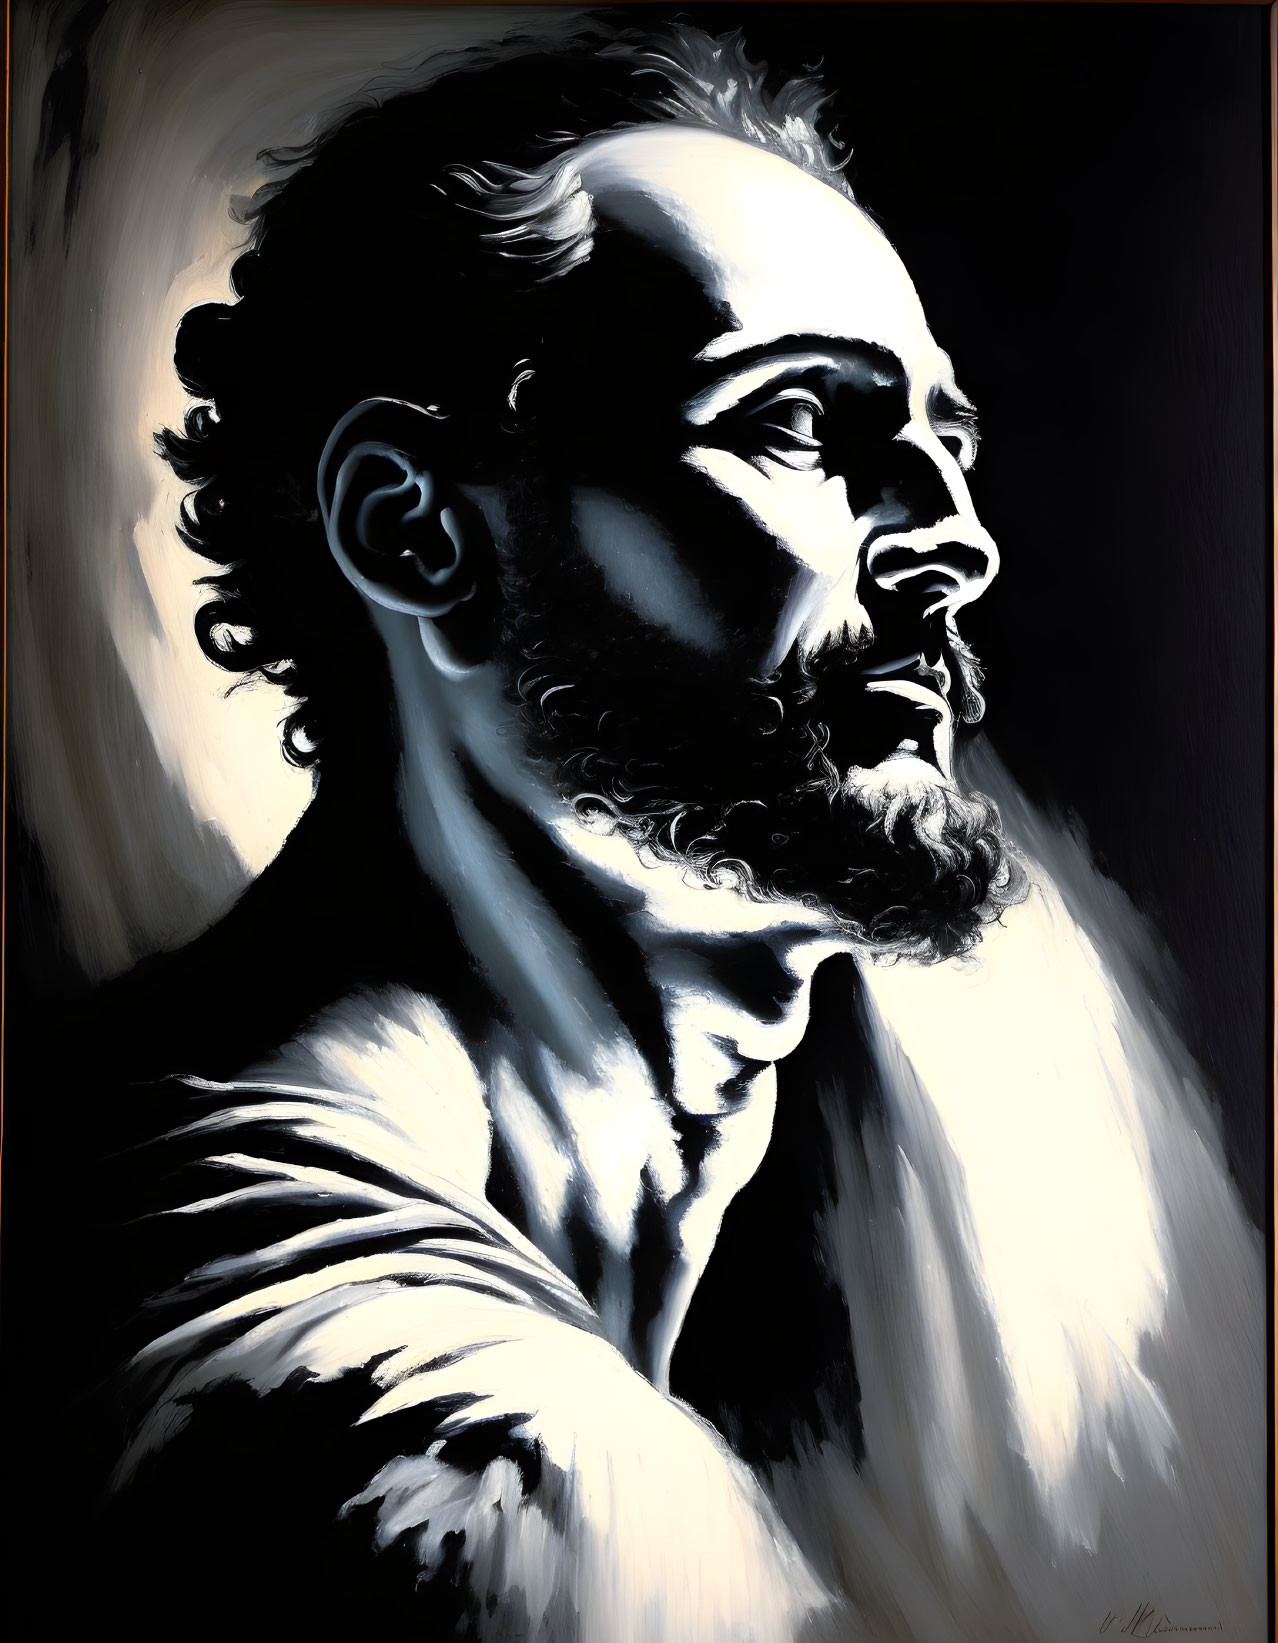 Monochrome portrait of bearded man in pensive gaze